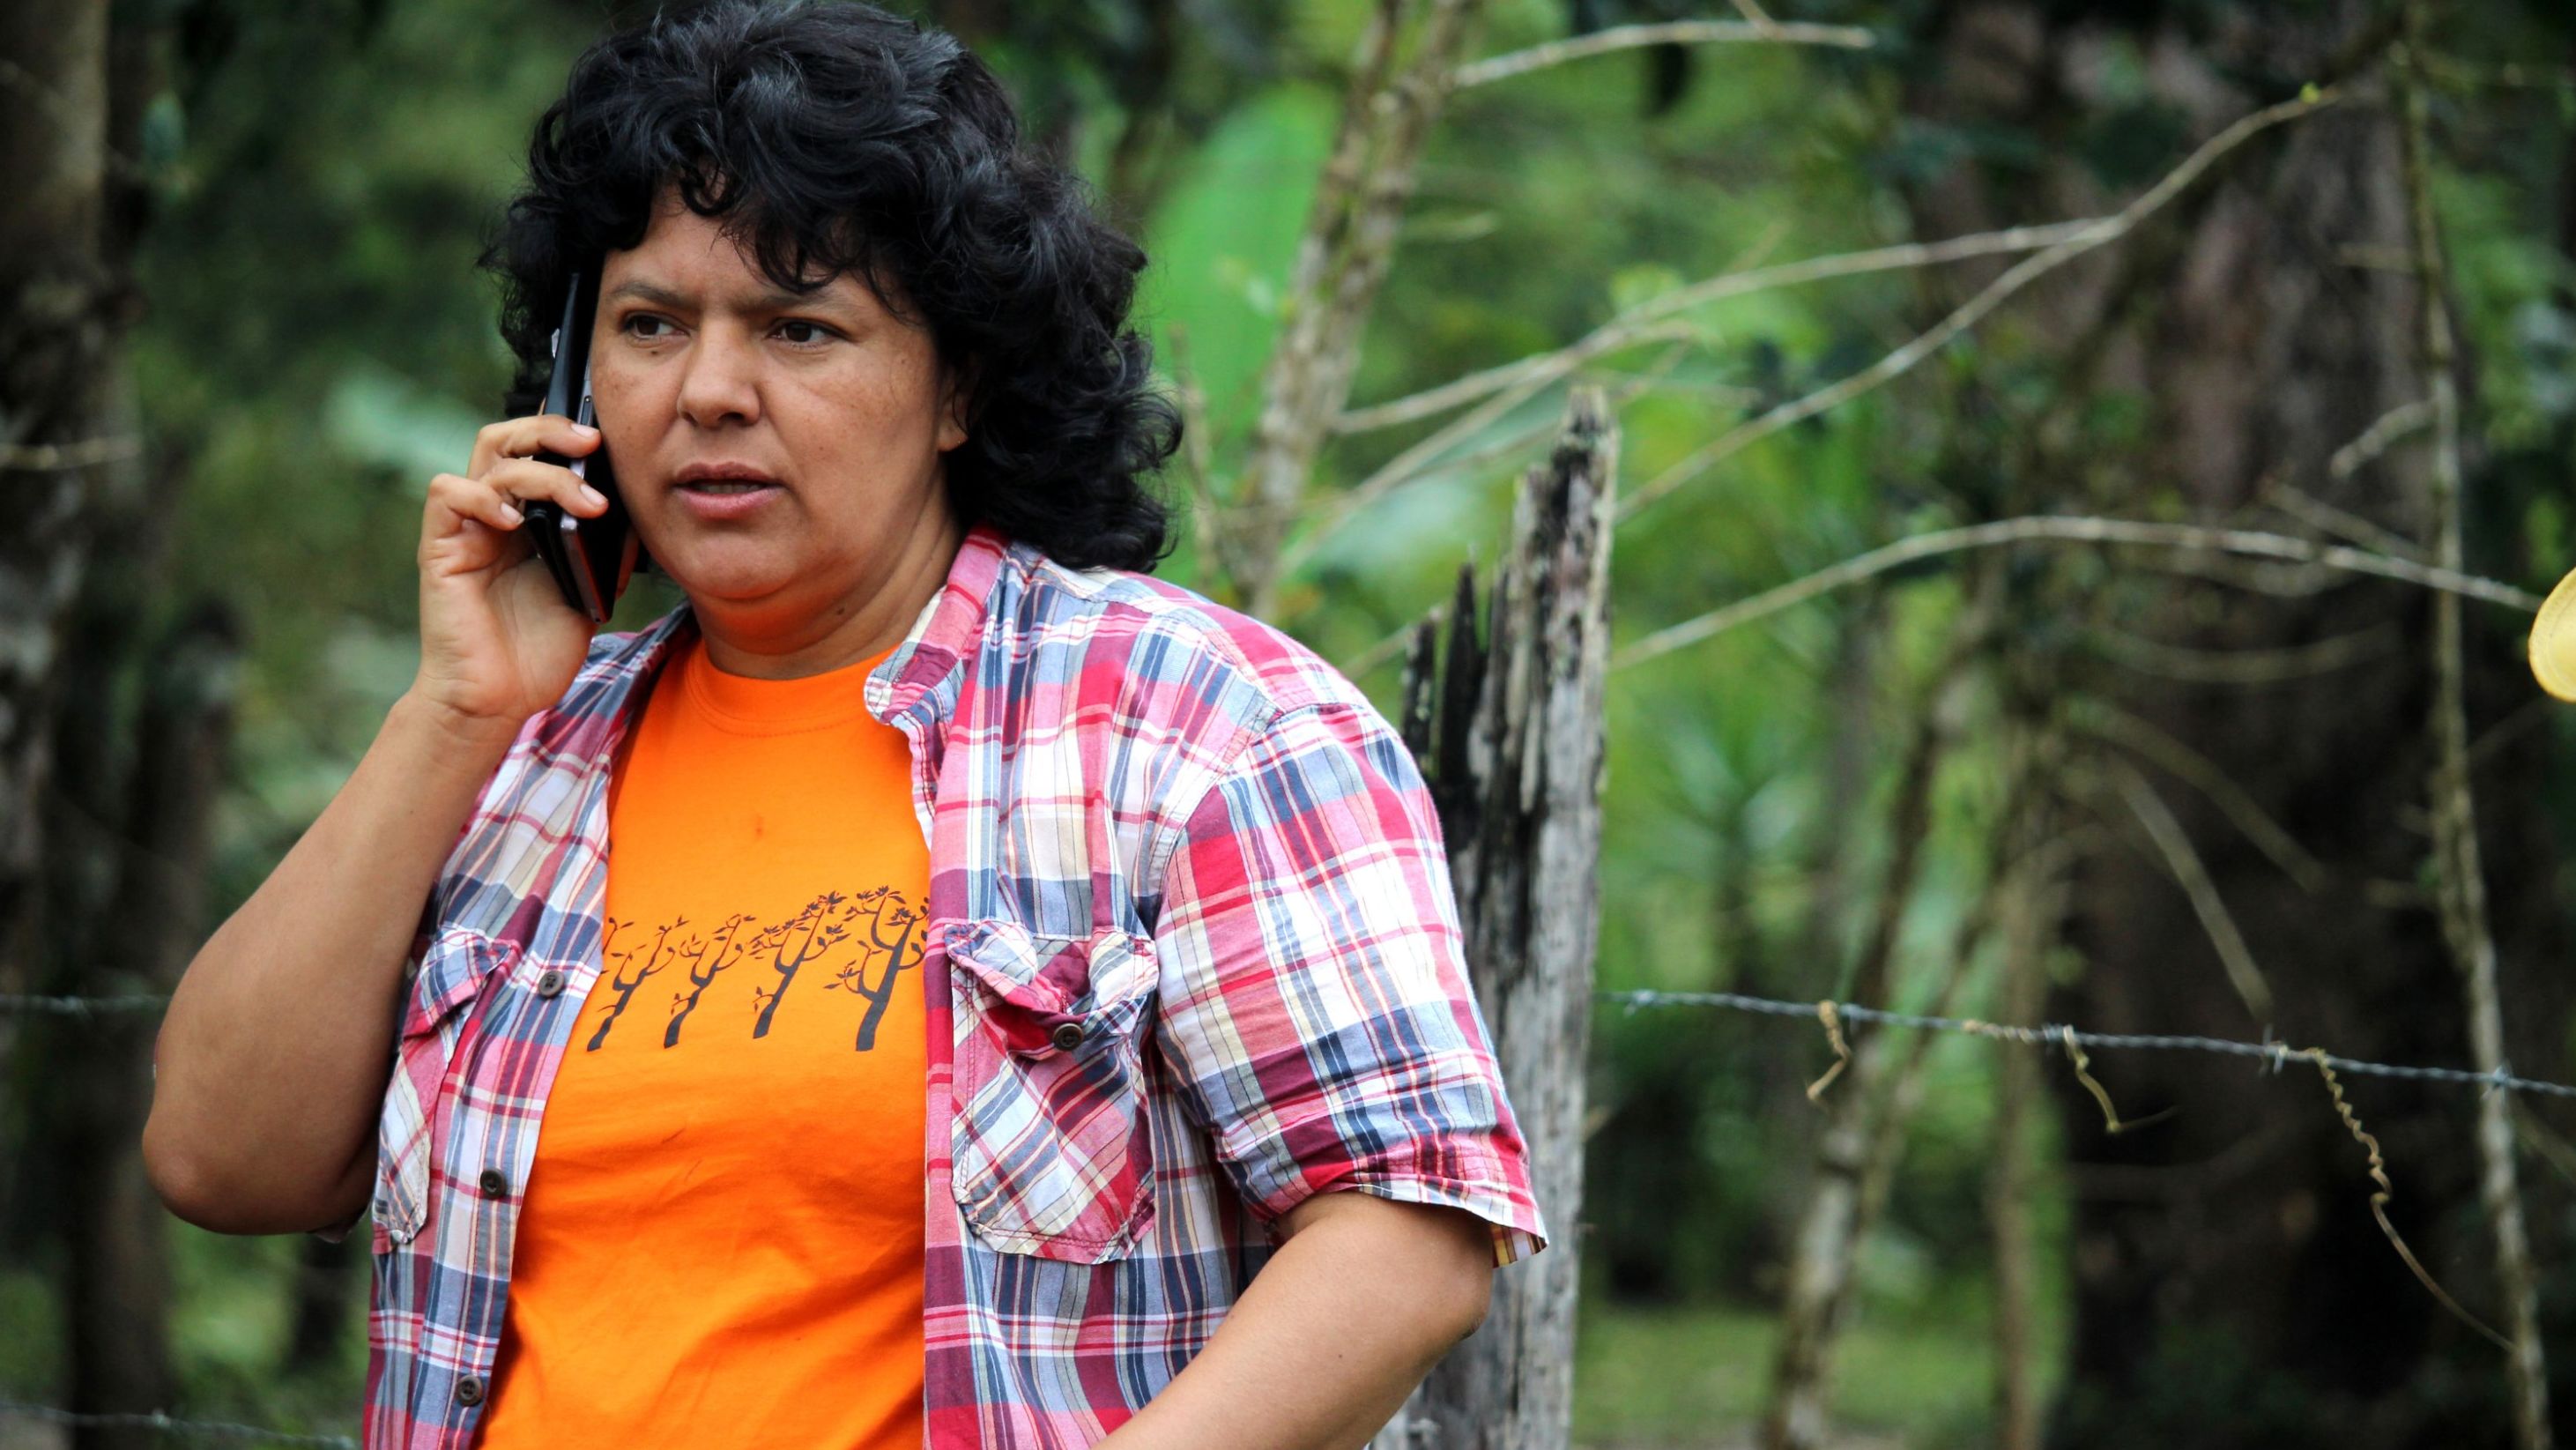 Activist Berta Caceres